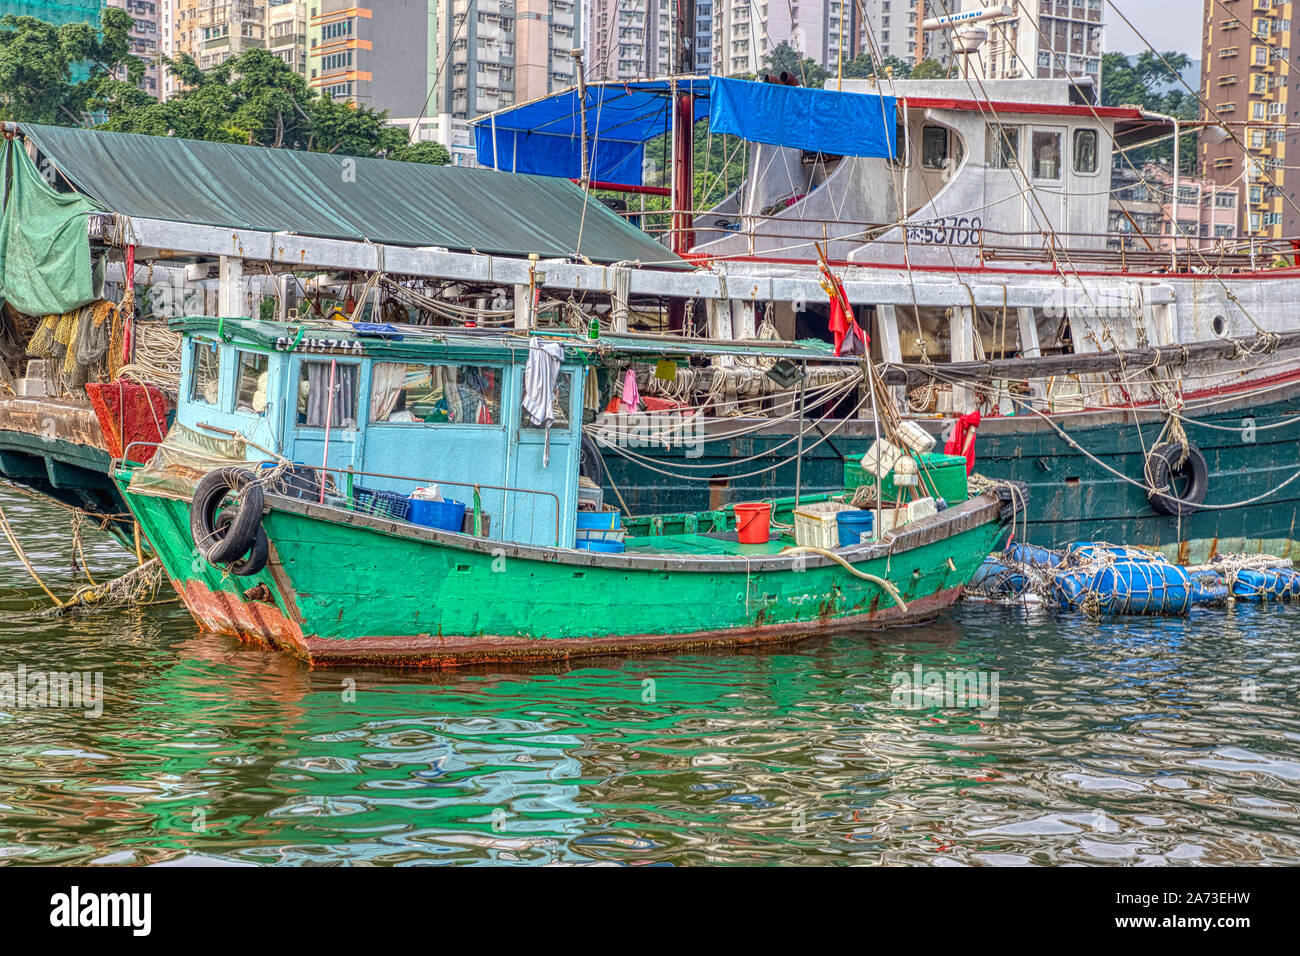 Boote auf dem Wasser, Hafen Aberdeen, Hong Kong Stockfotografie - Alamy